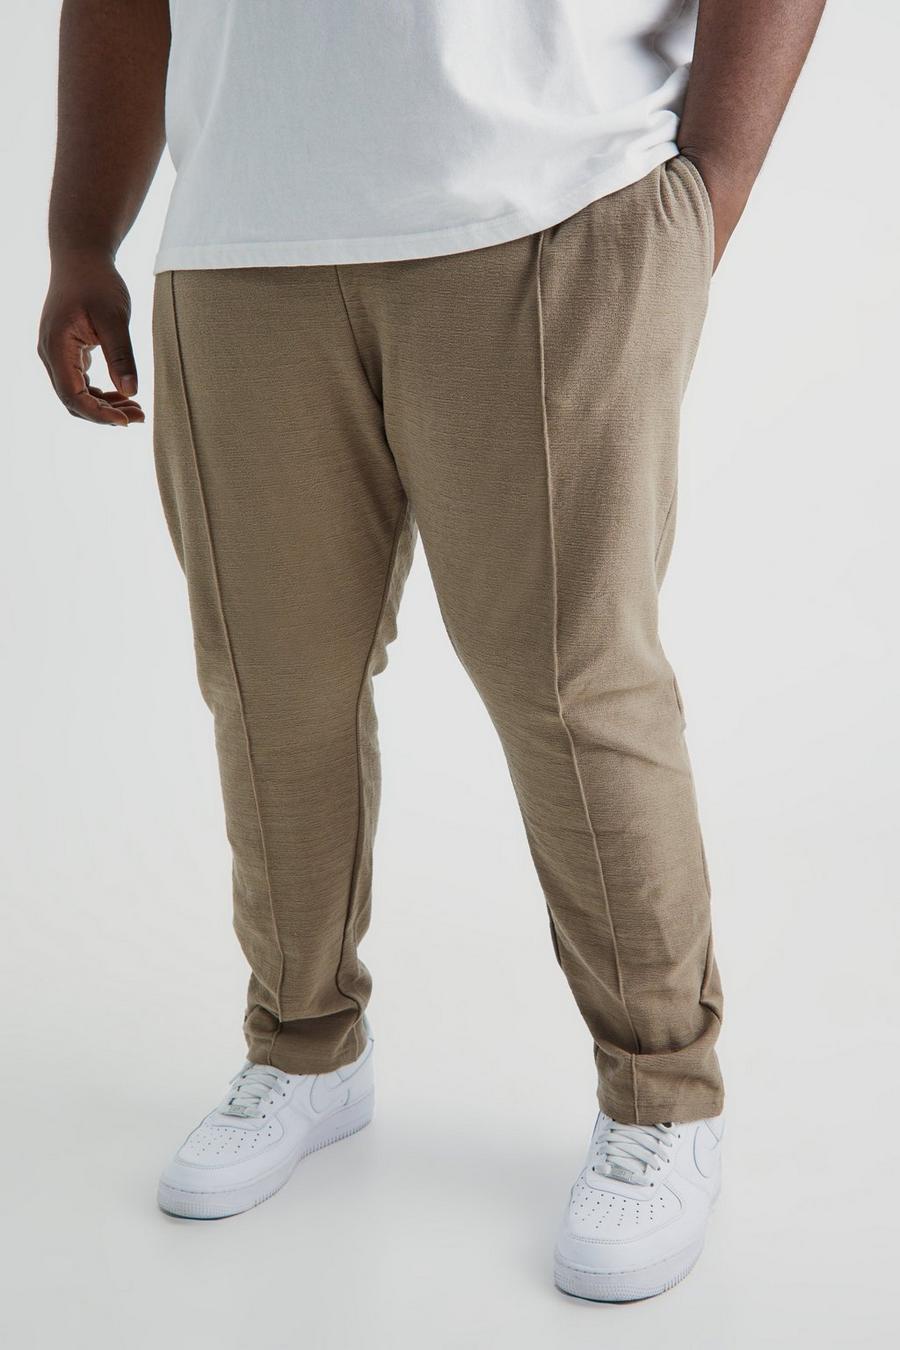 Pantalón deportivo Plus ajustado con estampado entrelazado, Taupe